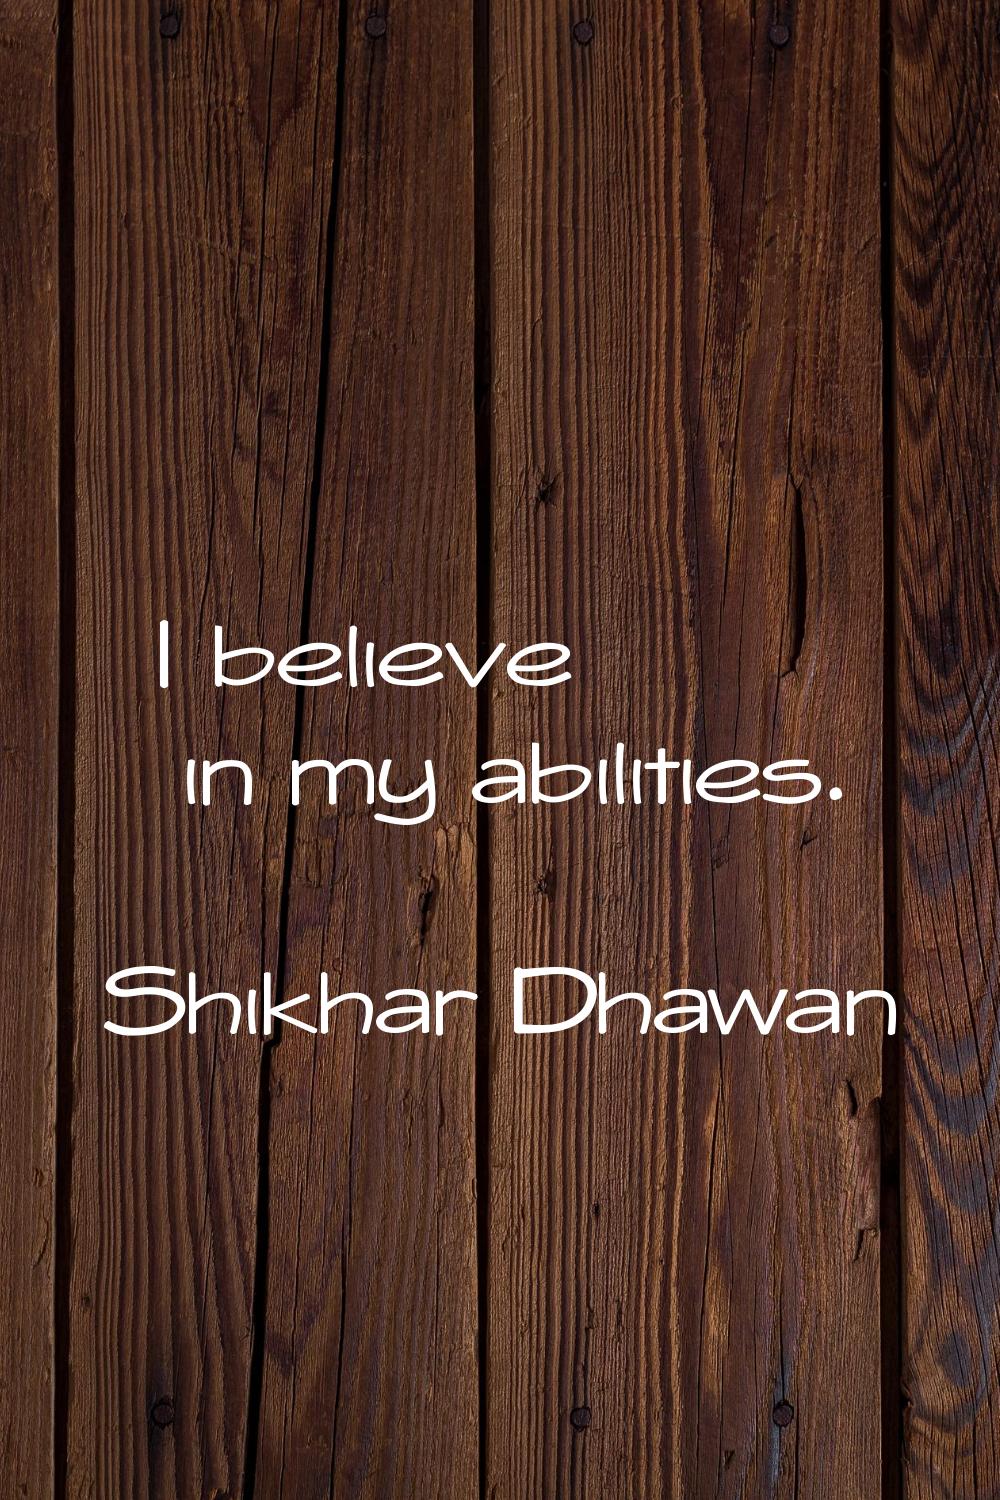 I believe in my abilities.